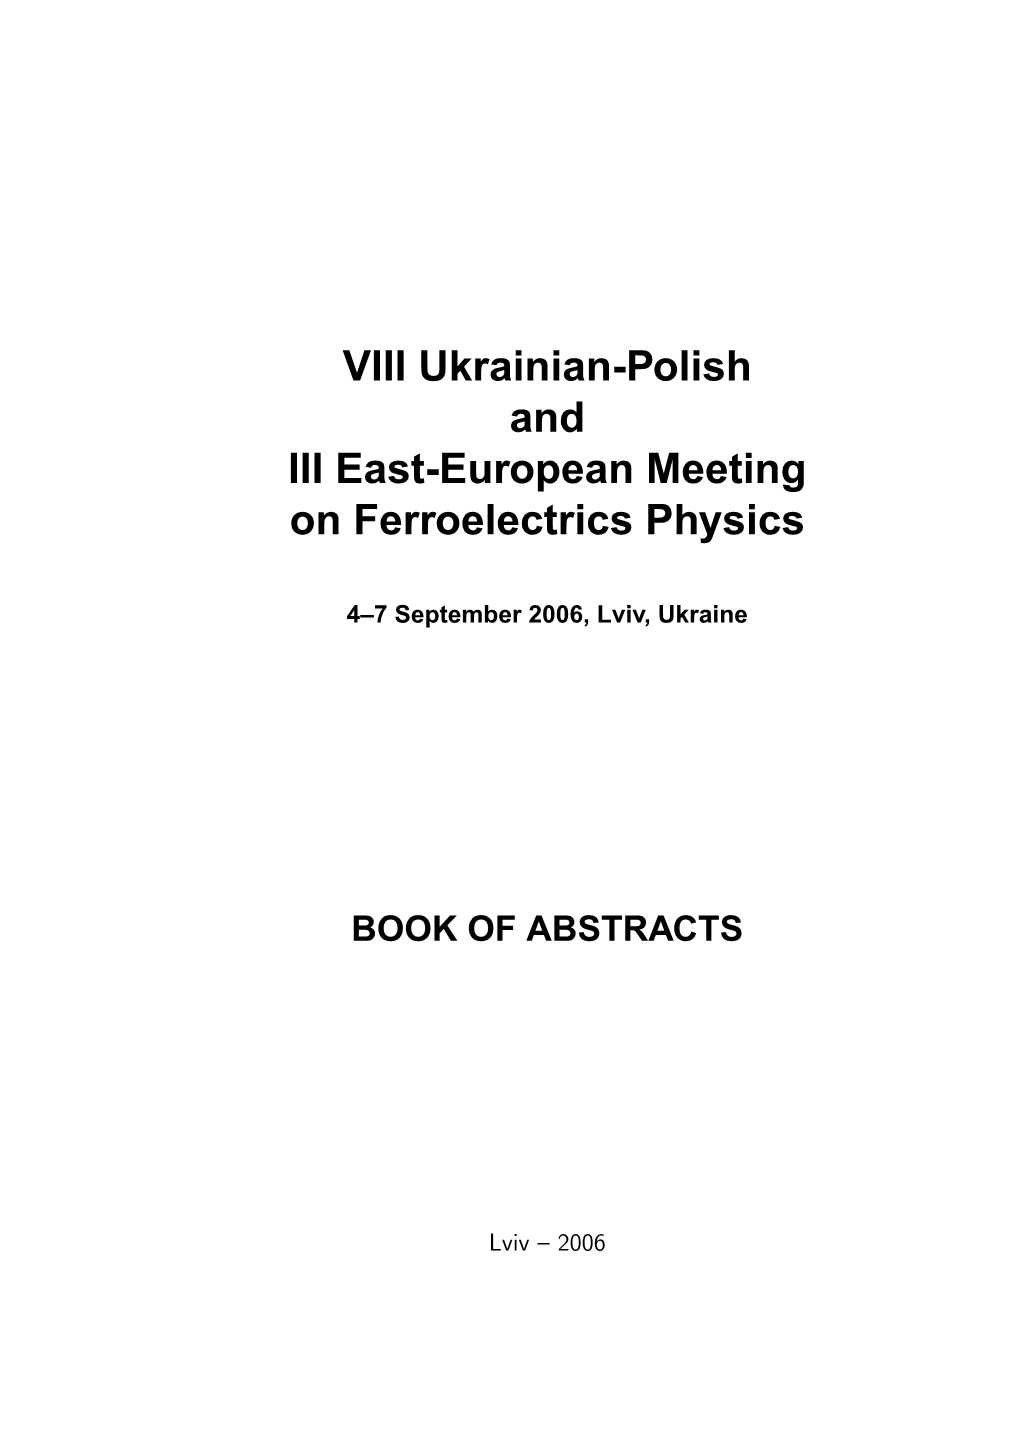 VIII Ukrainian-Polish and III East-European Meeting on Ferroelectrics Physics